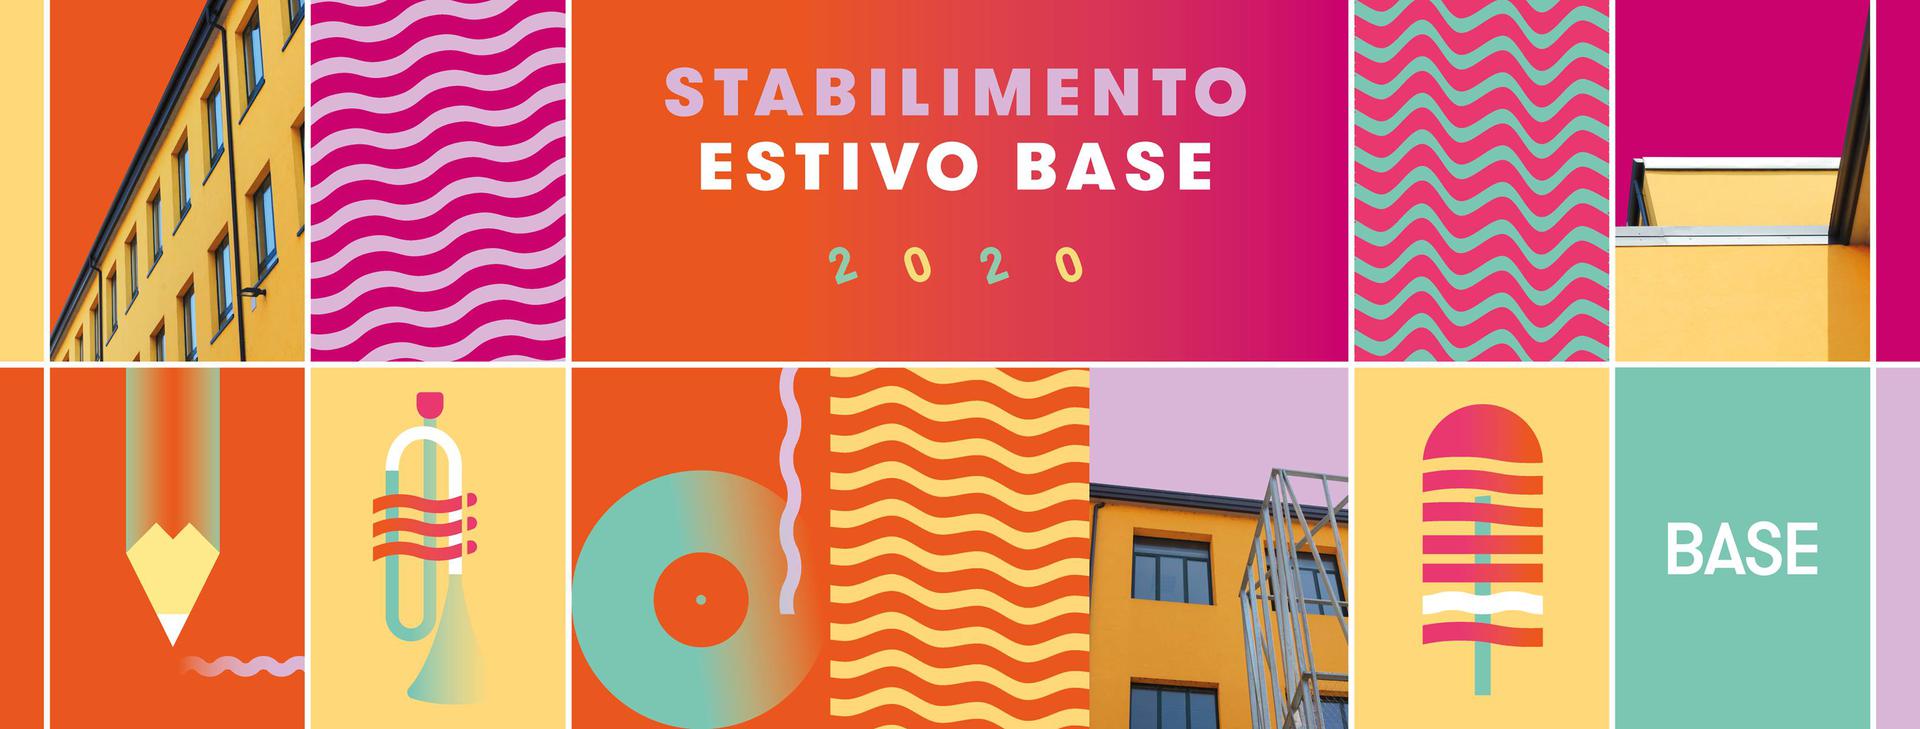 milano-al-via-domani-stabilimento-estivo-base-2020